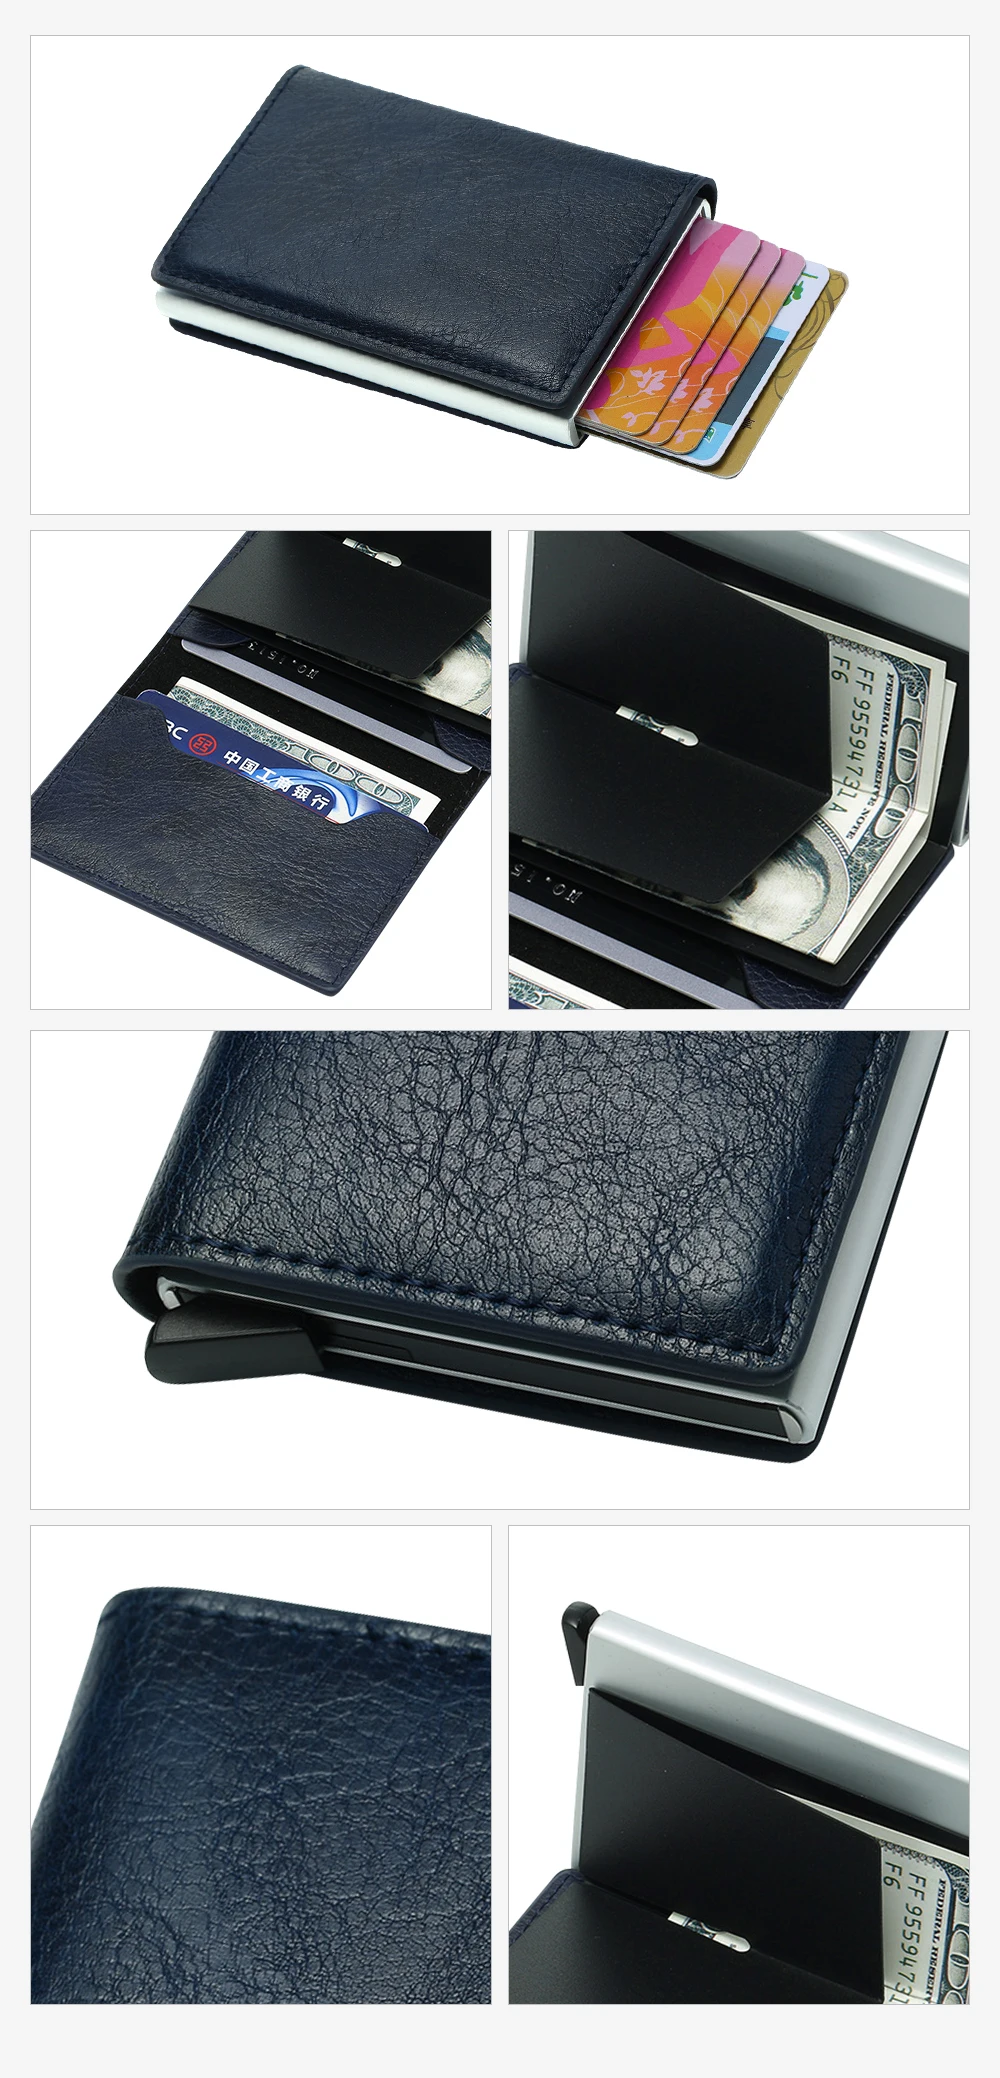 Tanie BISI GORO Anti-Theft Rfid blokowanie inteligentny portfel mężczyźni Vintage skórzany portfel z sklep